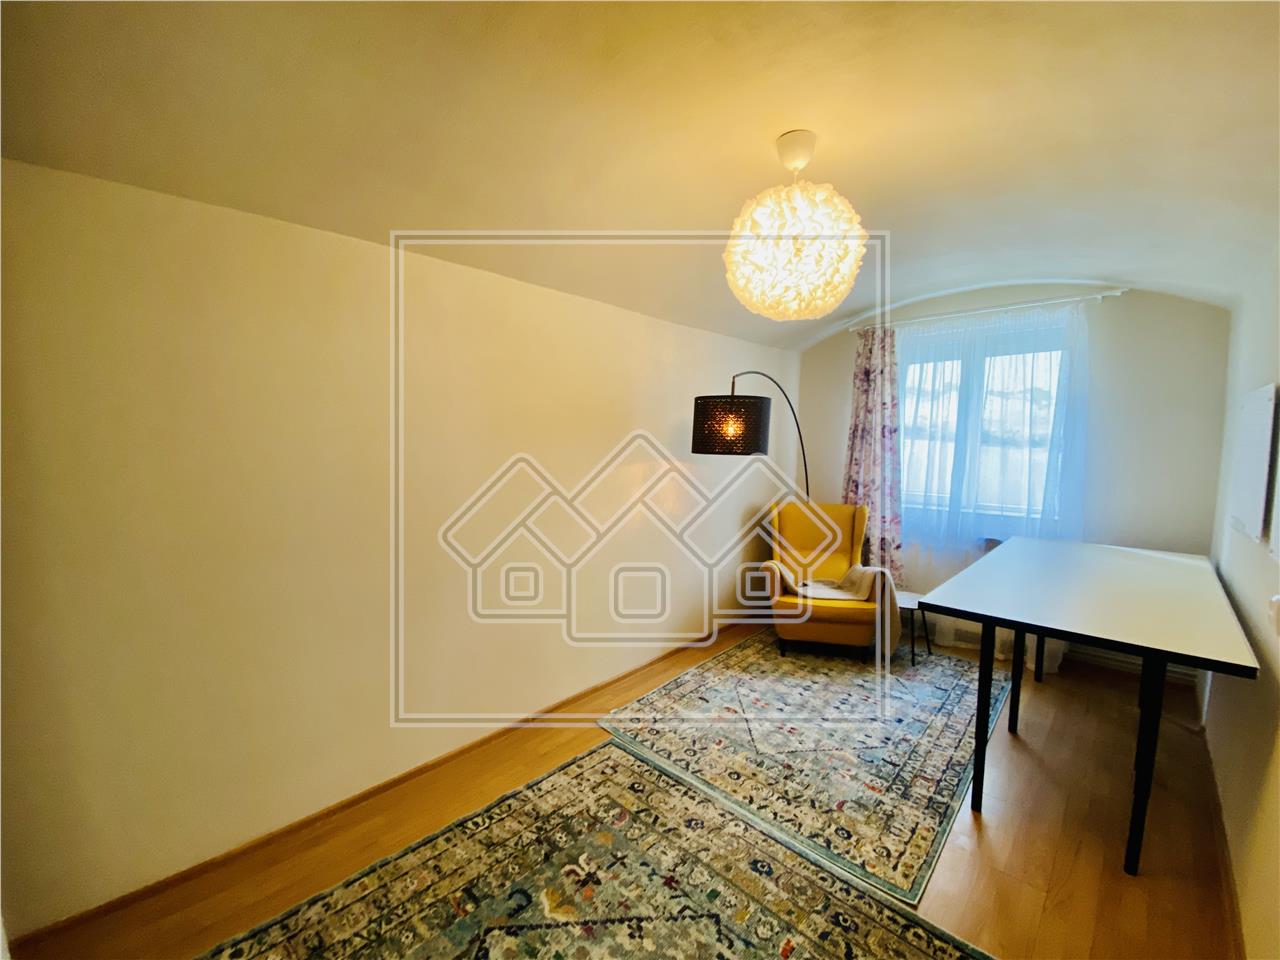 Apartament de vanzare in Sibiu - 2 camere - 41 mp utili -